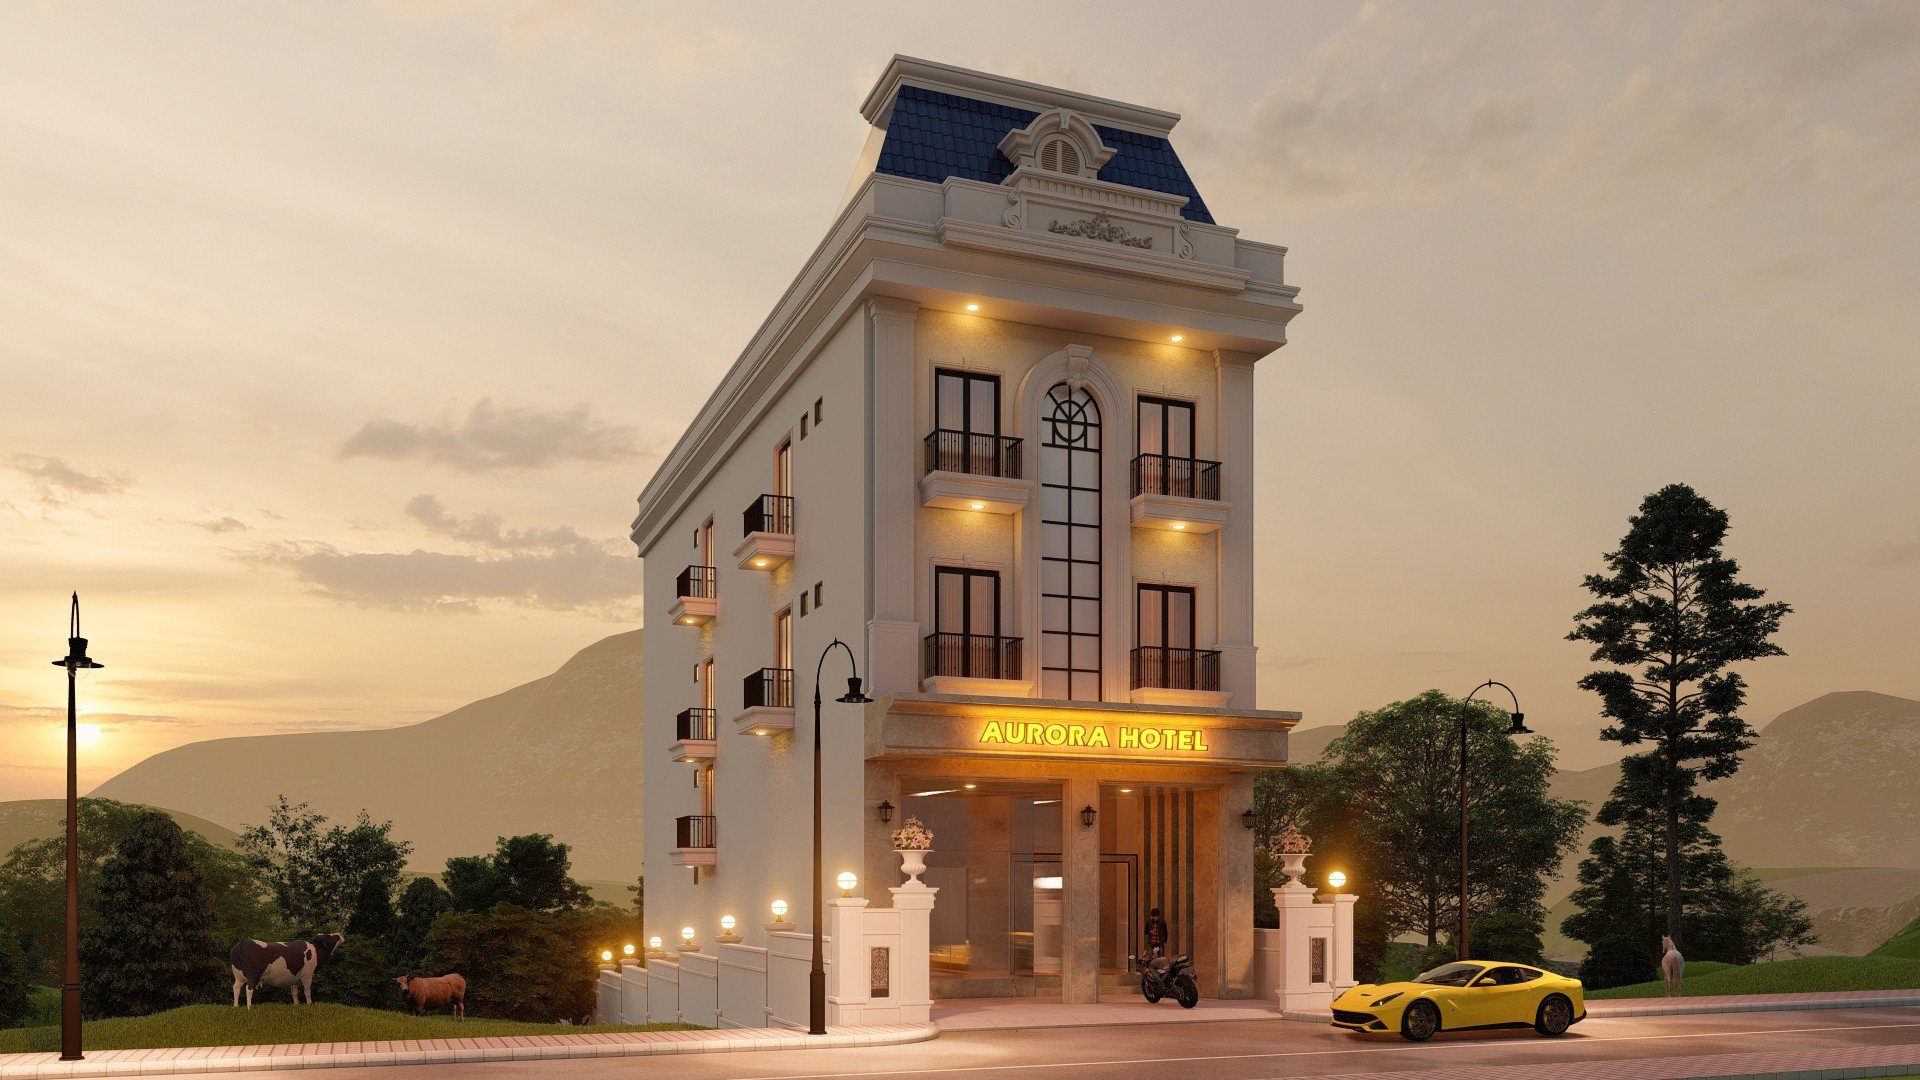 khách sạn măng đen aurora hotel giá rẻ, chất lượng mới xây